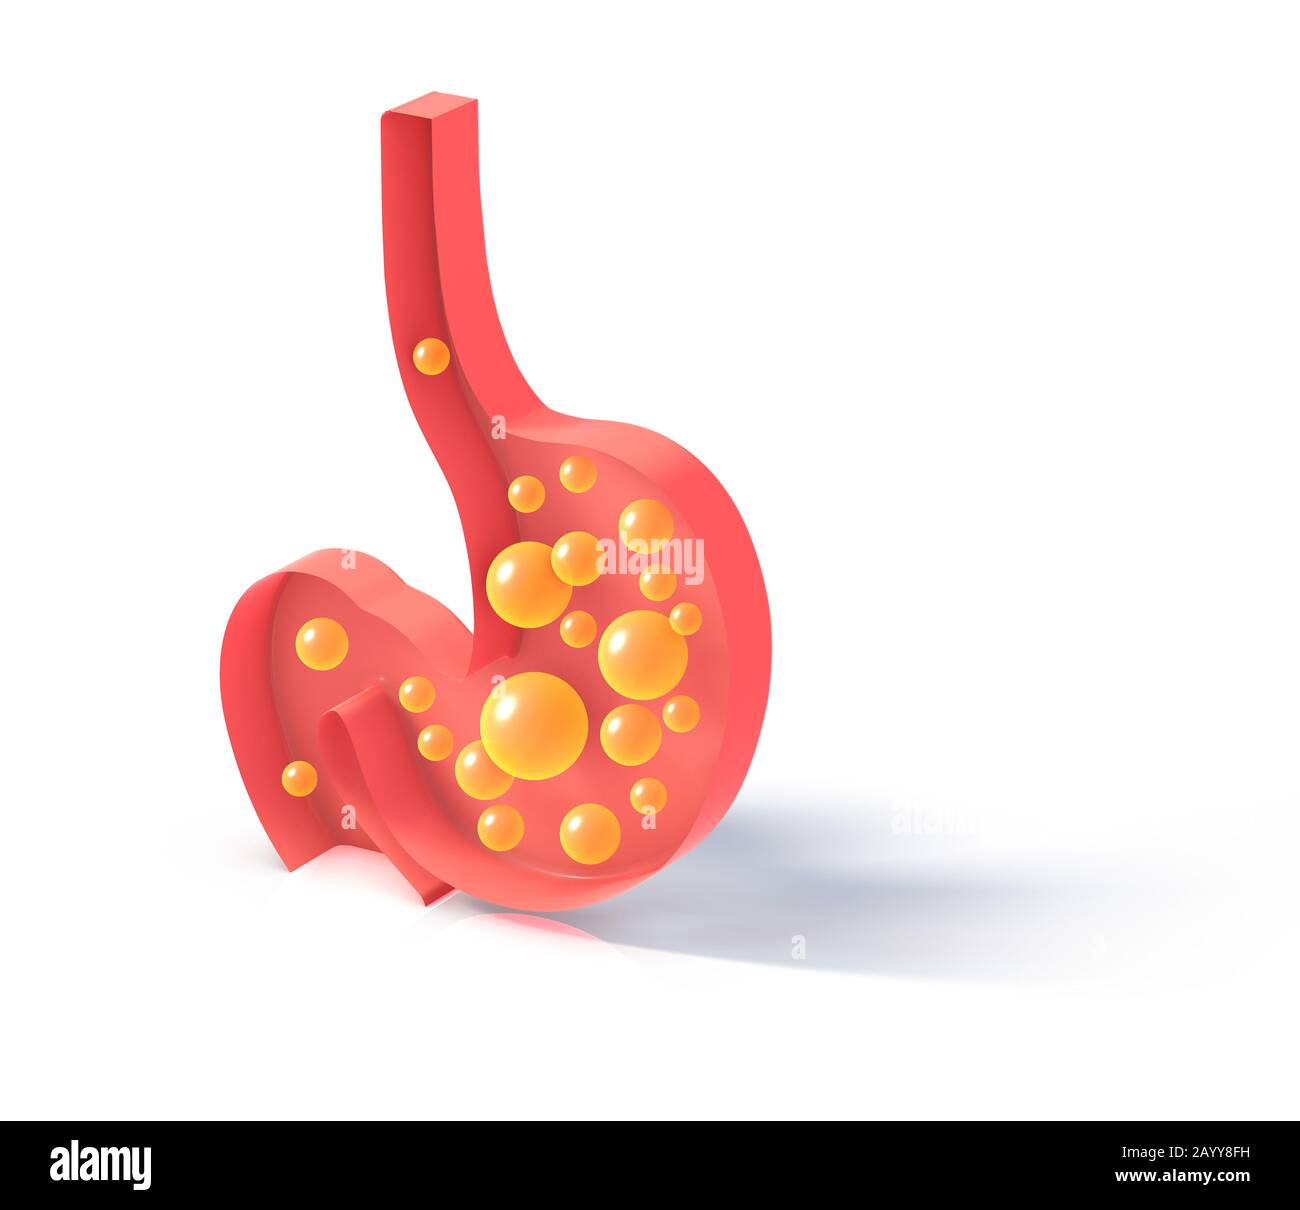 Figura 3D dello schema interno dello stomaco con gas. Isolato appartamento figura appoggiato al pavimento su sfondo bianco con ombra. Foto Stock